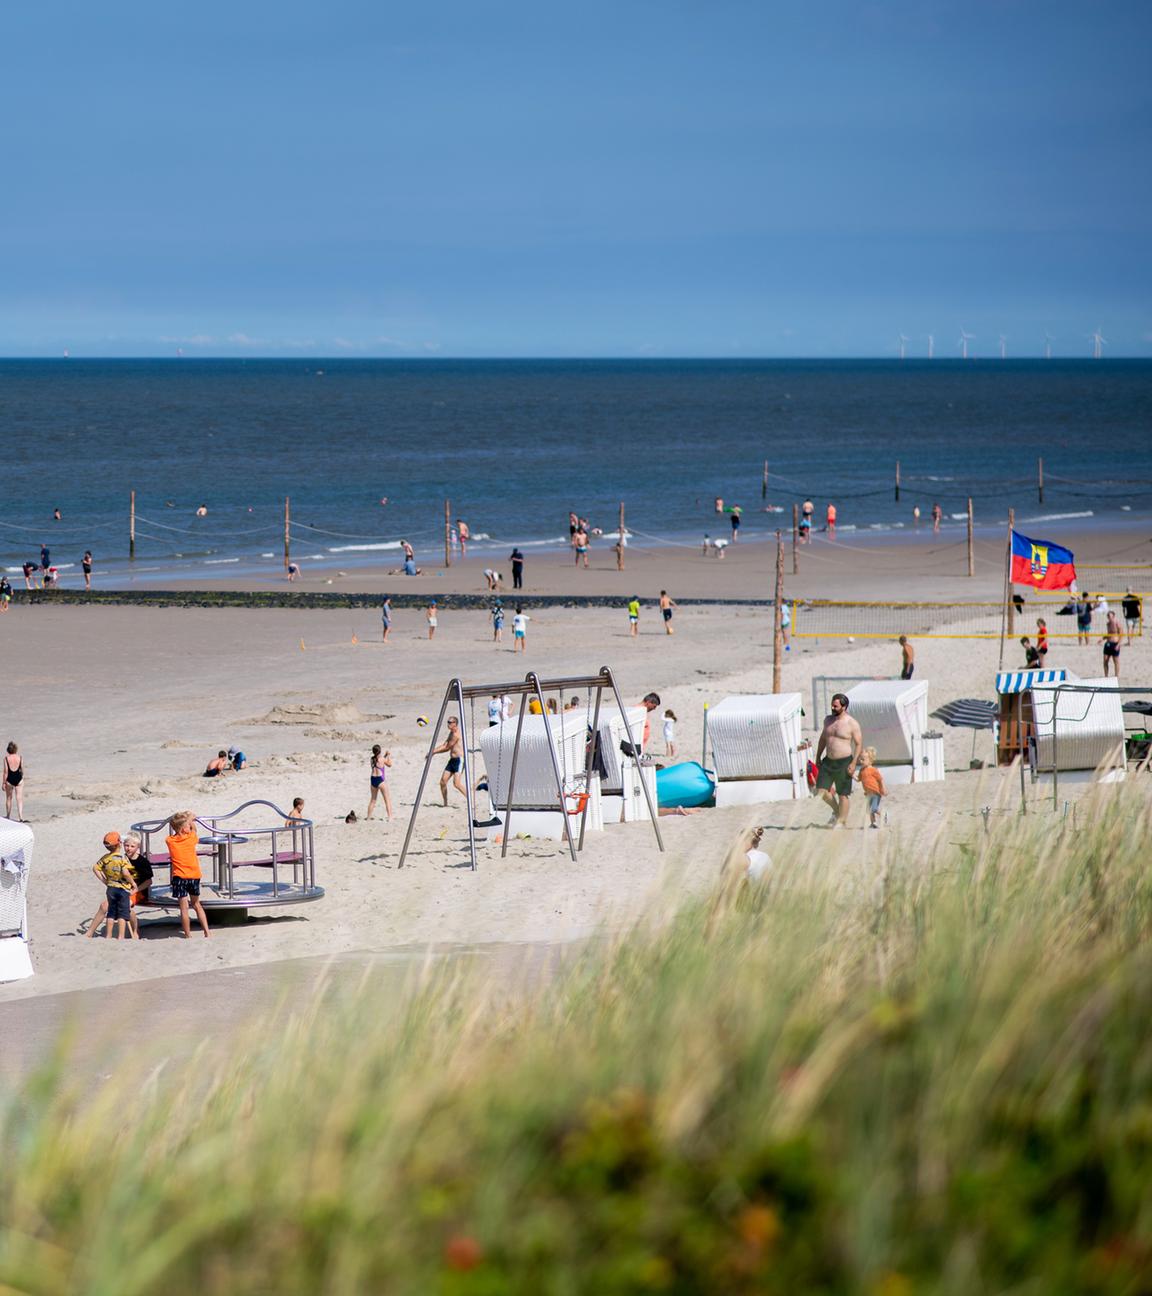 Zahlreiche Touristen sitzen bei sonnigem Wetter in Strandkörben am Strand der Insel Wangerooge